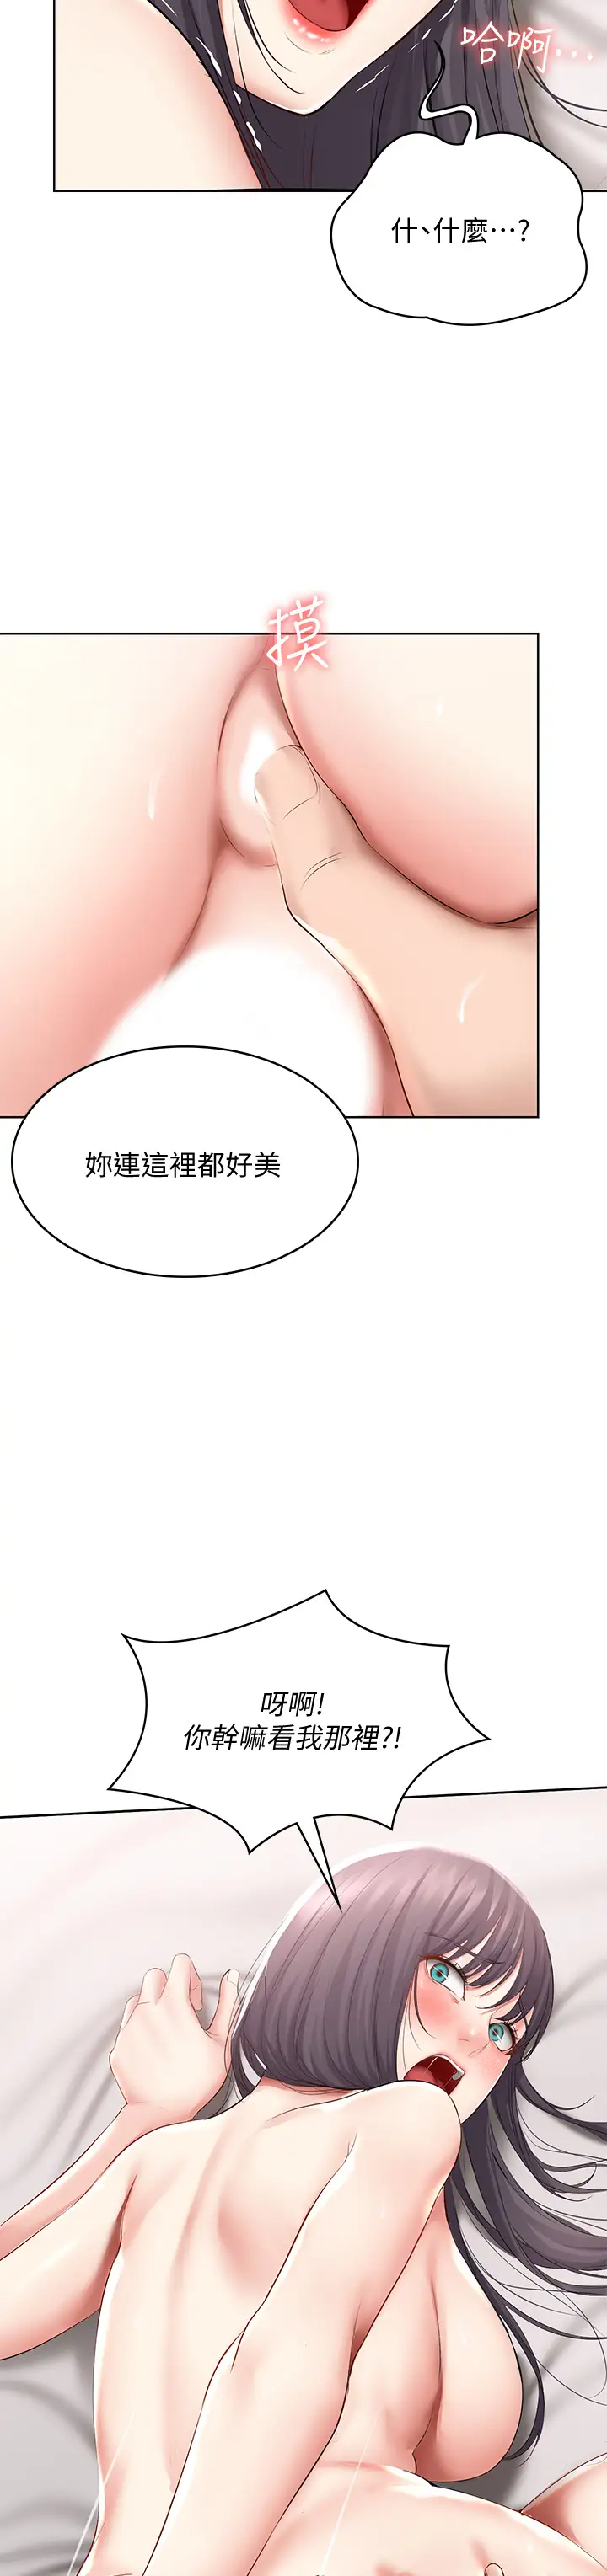 韩国污漫画 寄宿日記 第59话宛恩姐为俊宇练习的技术 27